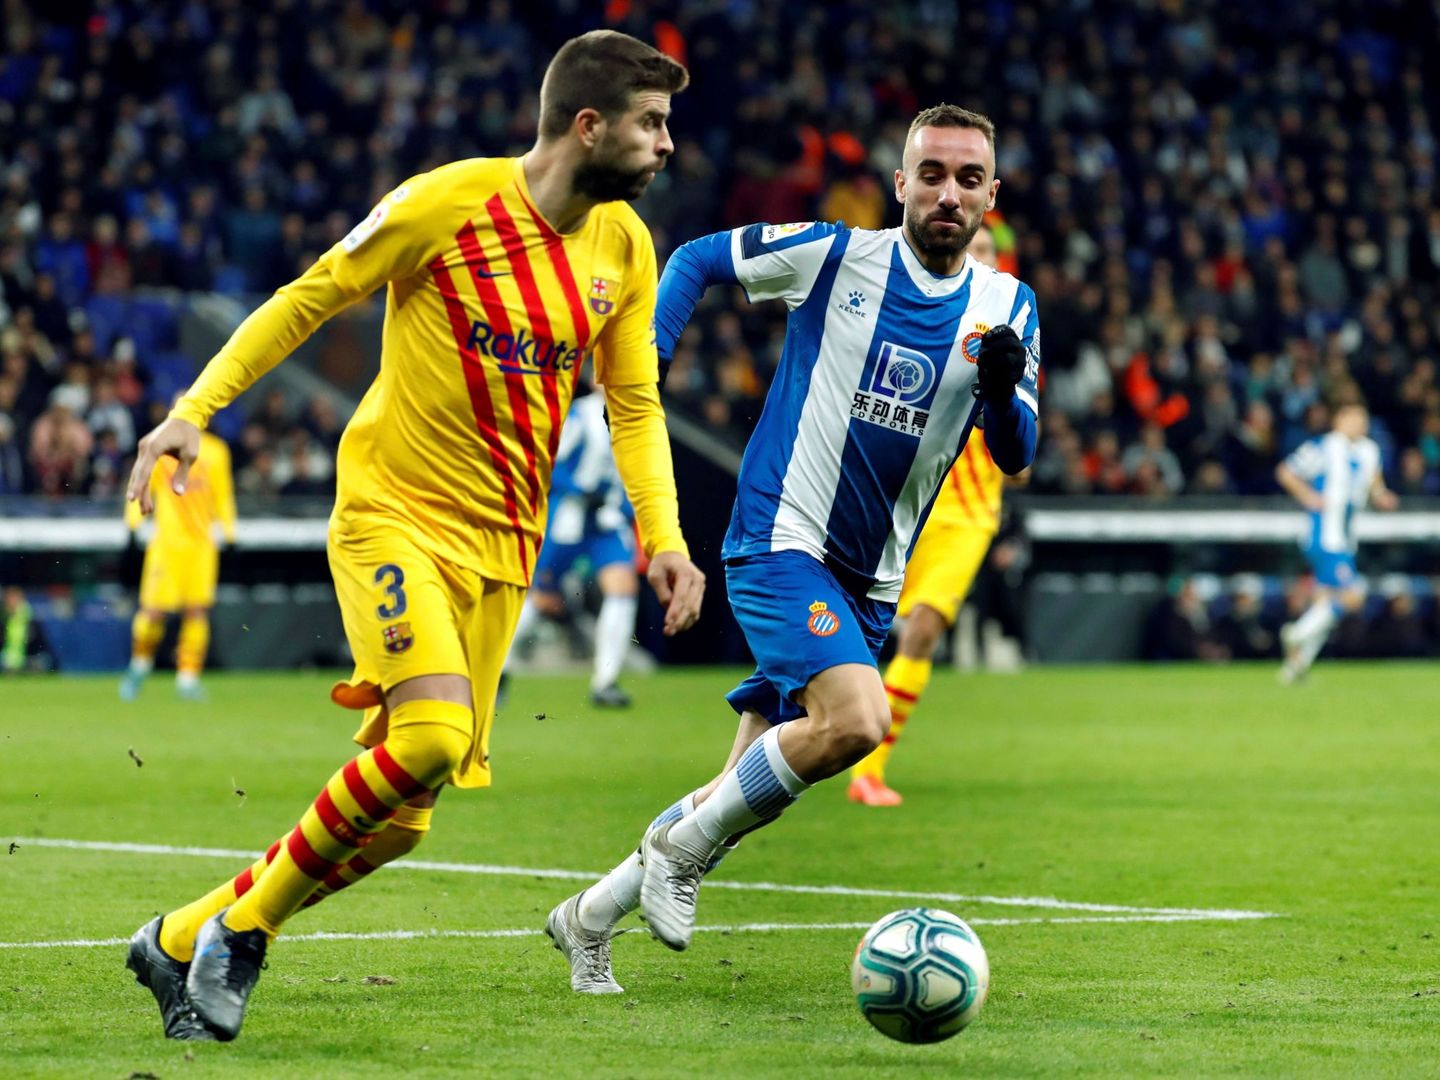 Gerard Piqué conduce la pelota en el RCD Stadium, la casa del Espanyol. (EFE)